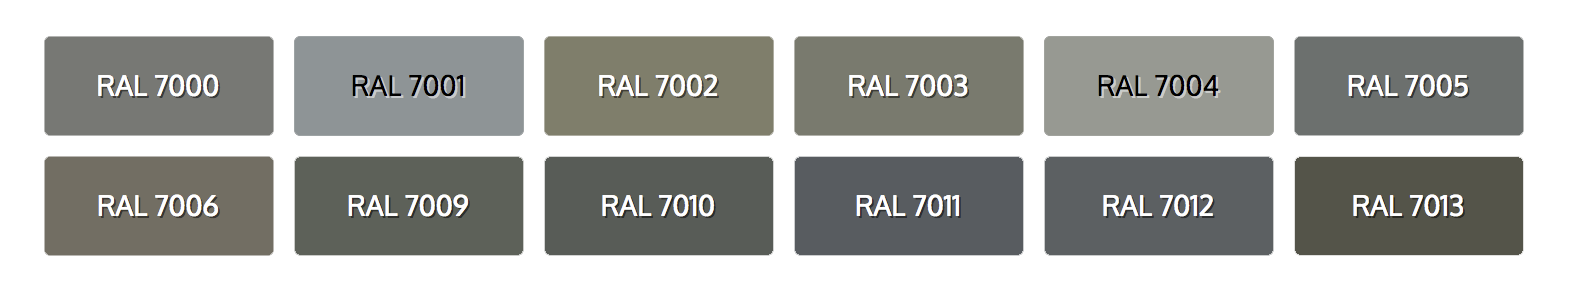 Рал 7000 vs 7004. Краска RAL 7001 цвет. RAL Classic 7004 - сигнальный серый. Рал серый цвет 7005. Новый рал 8 северный лис читать